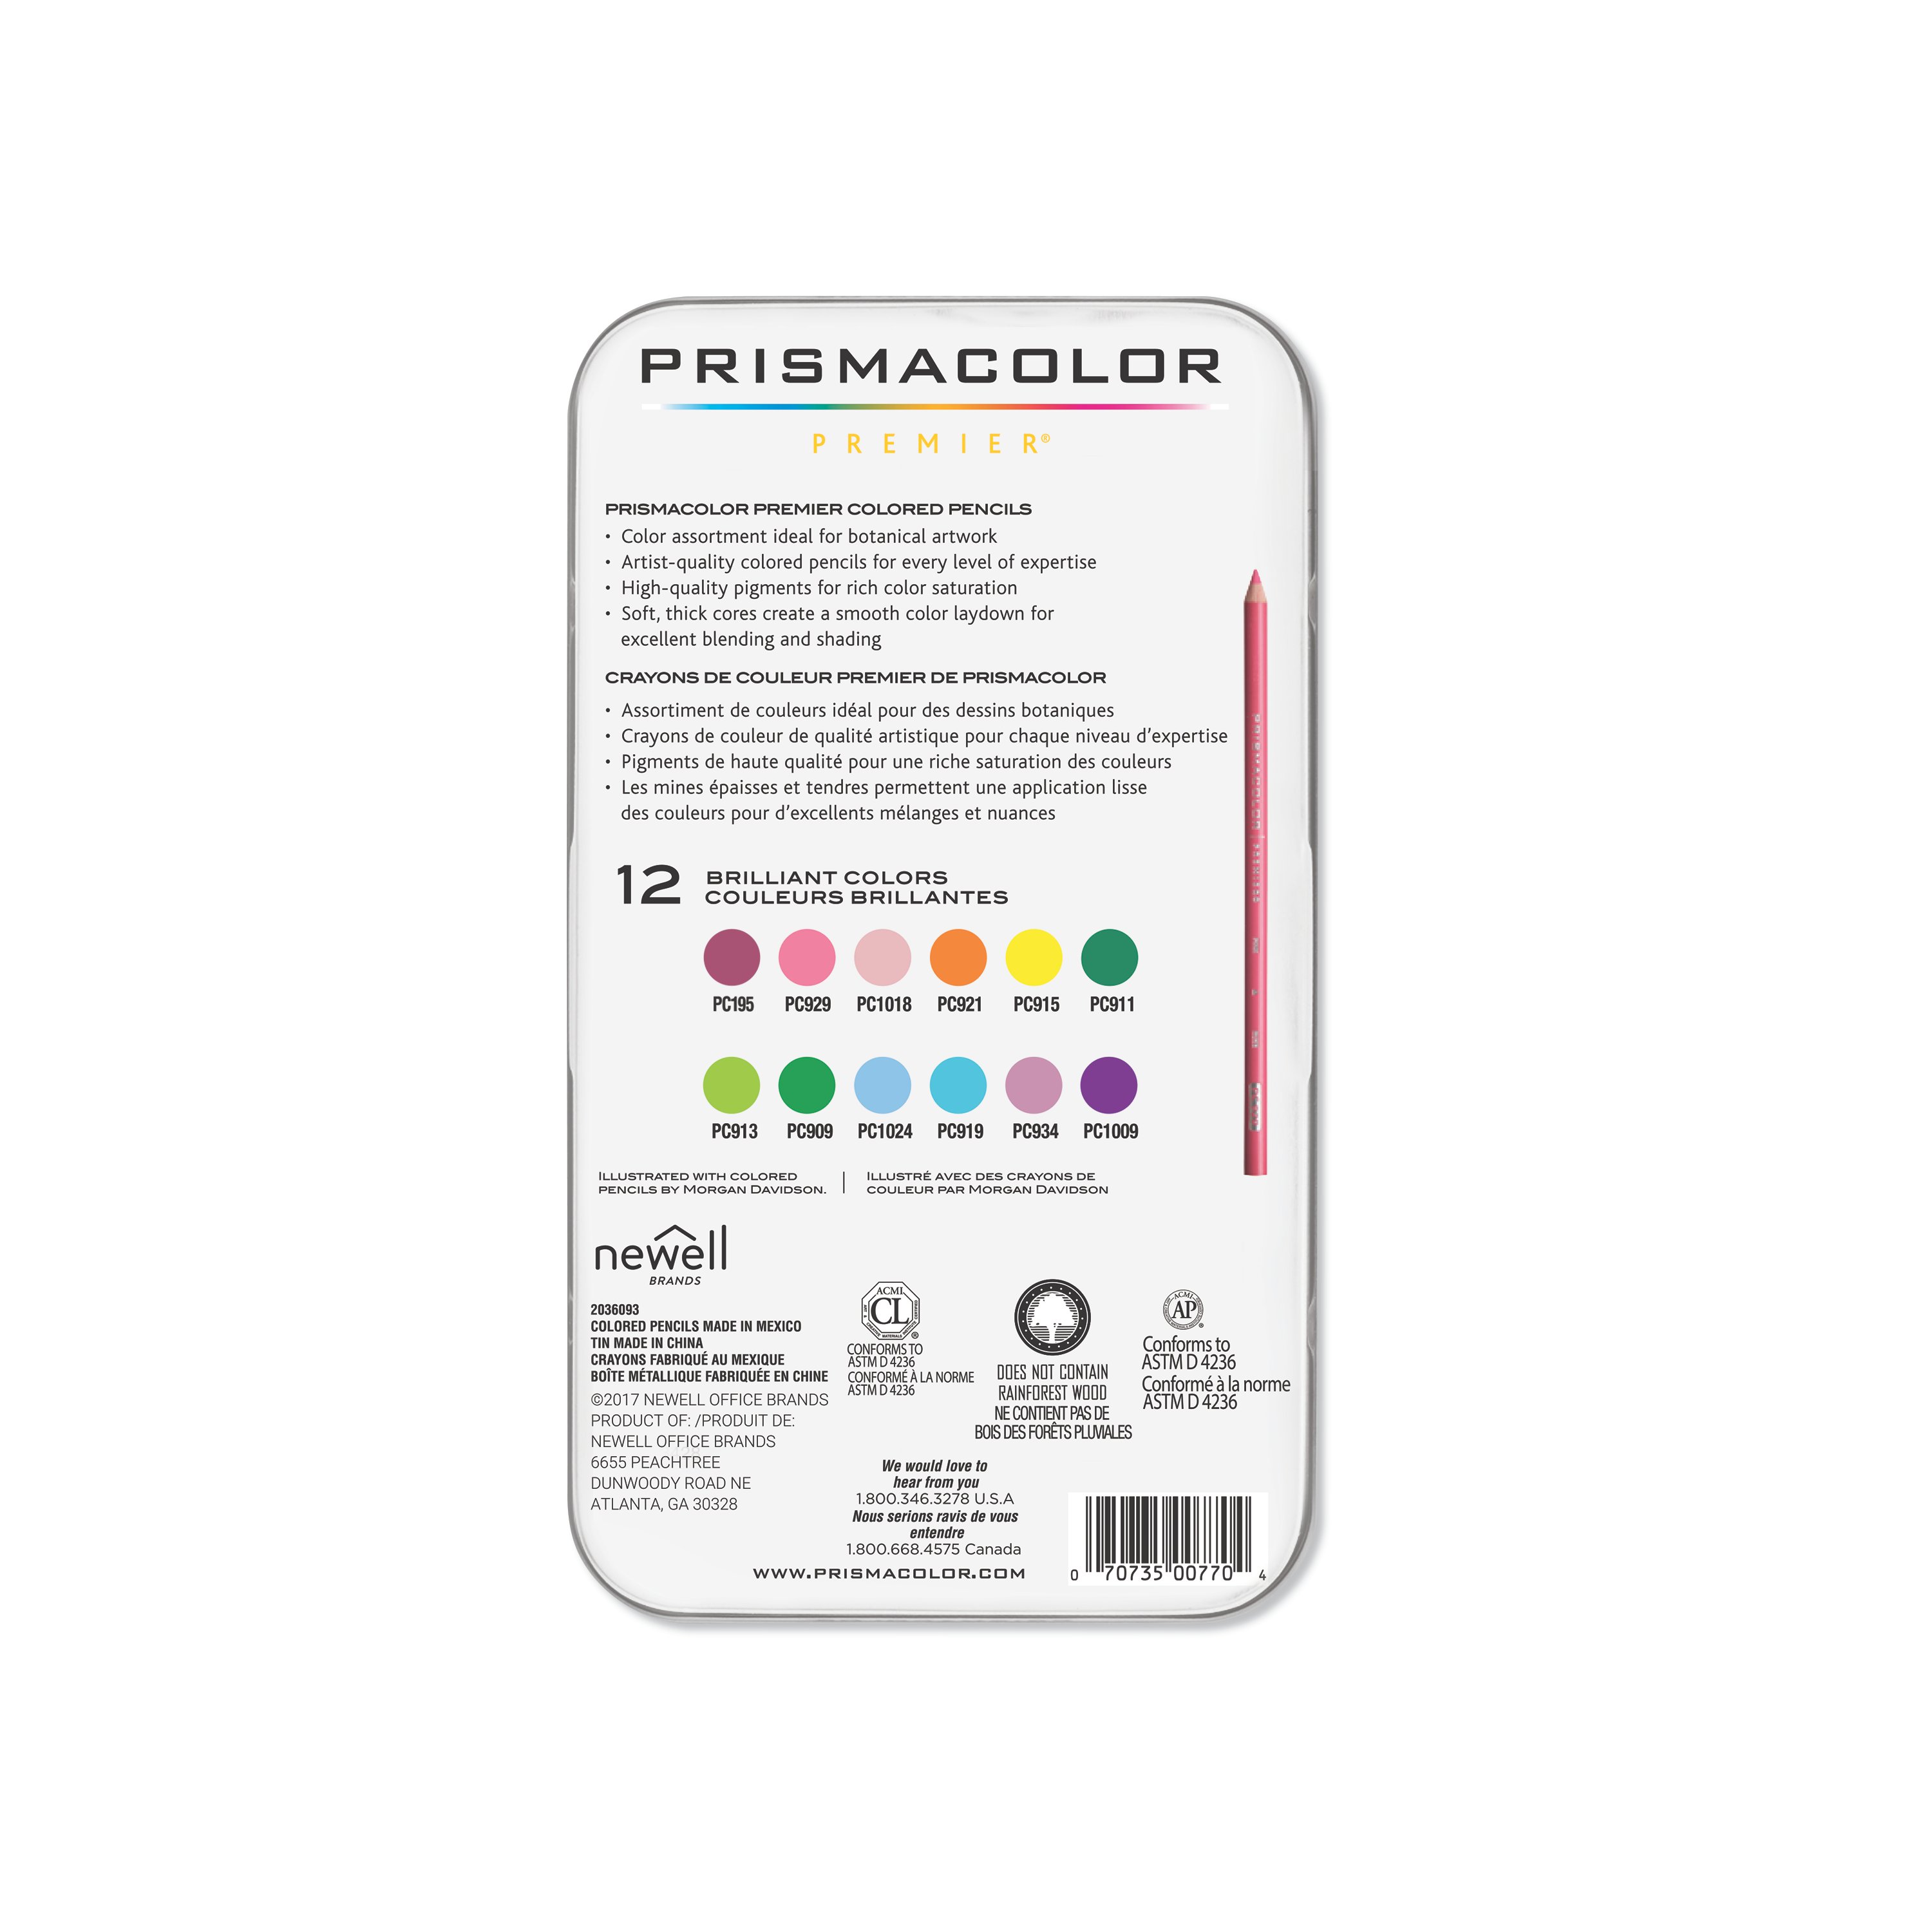 Lápices de colores Prismacolor Premier Blíster. – Dupapier